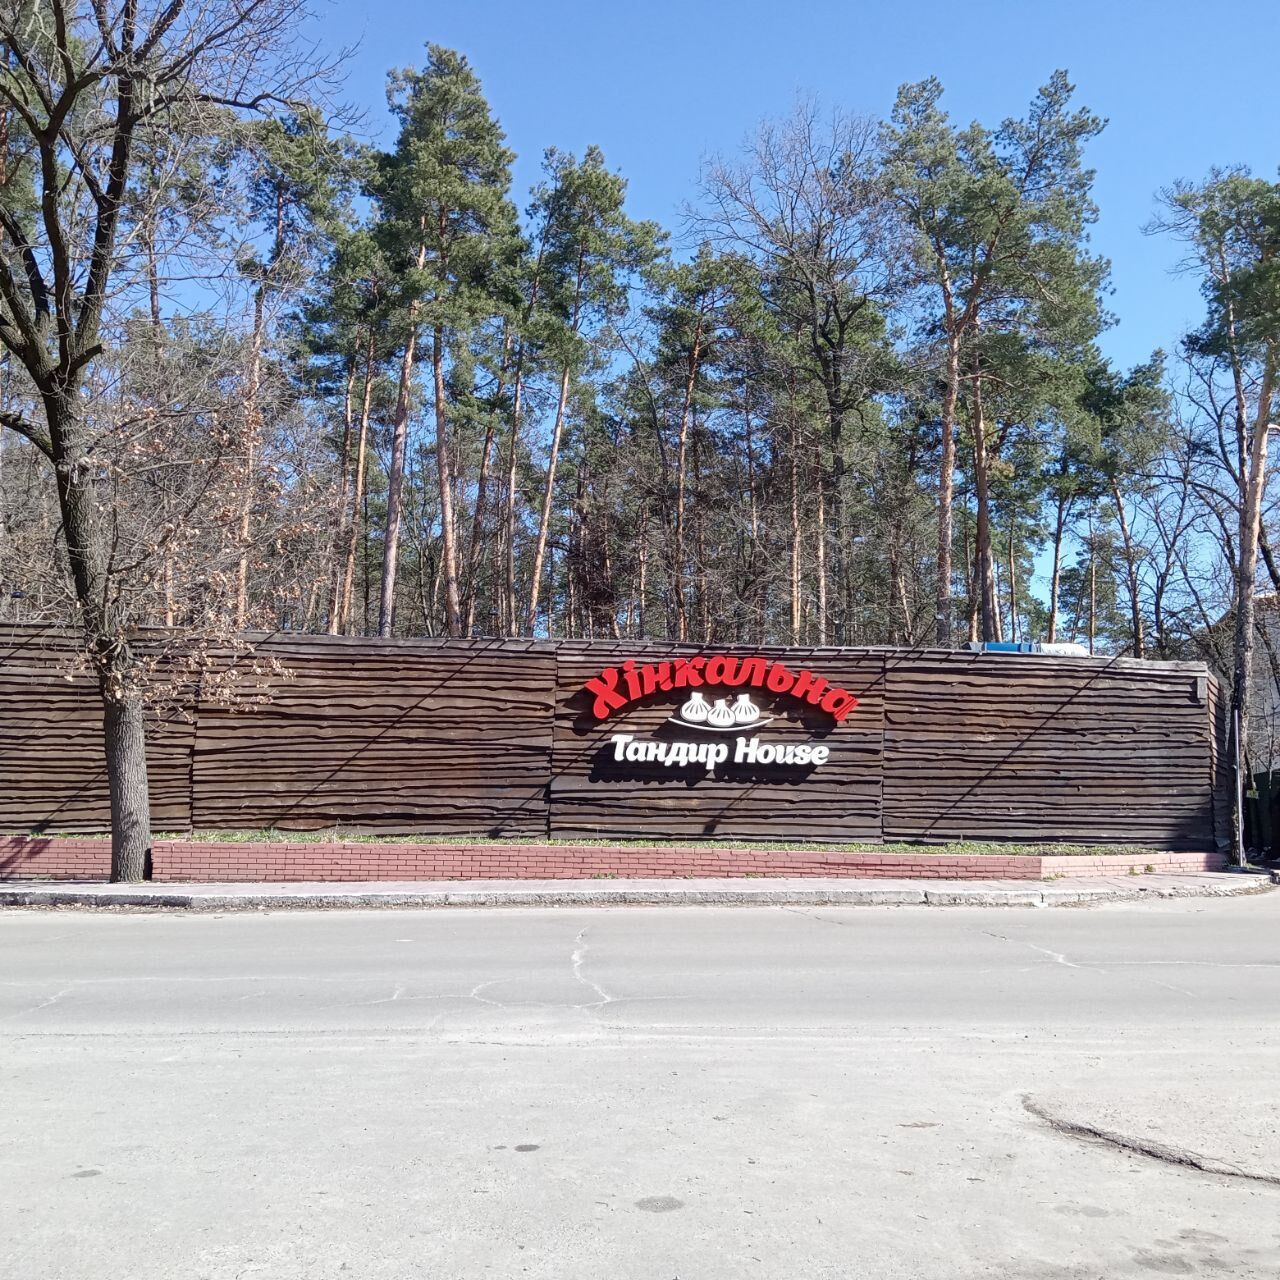 Суд затягивают, а регистраторы исчезли: что происходит с незаконным захватом территории Национального парка "Голосеевский" в Киеве